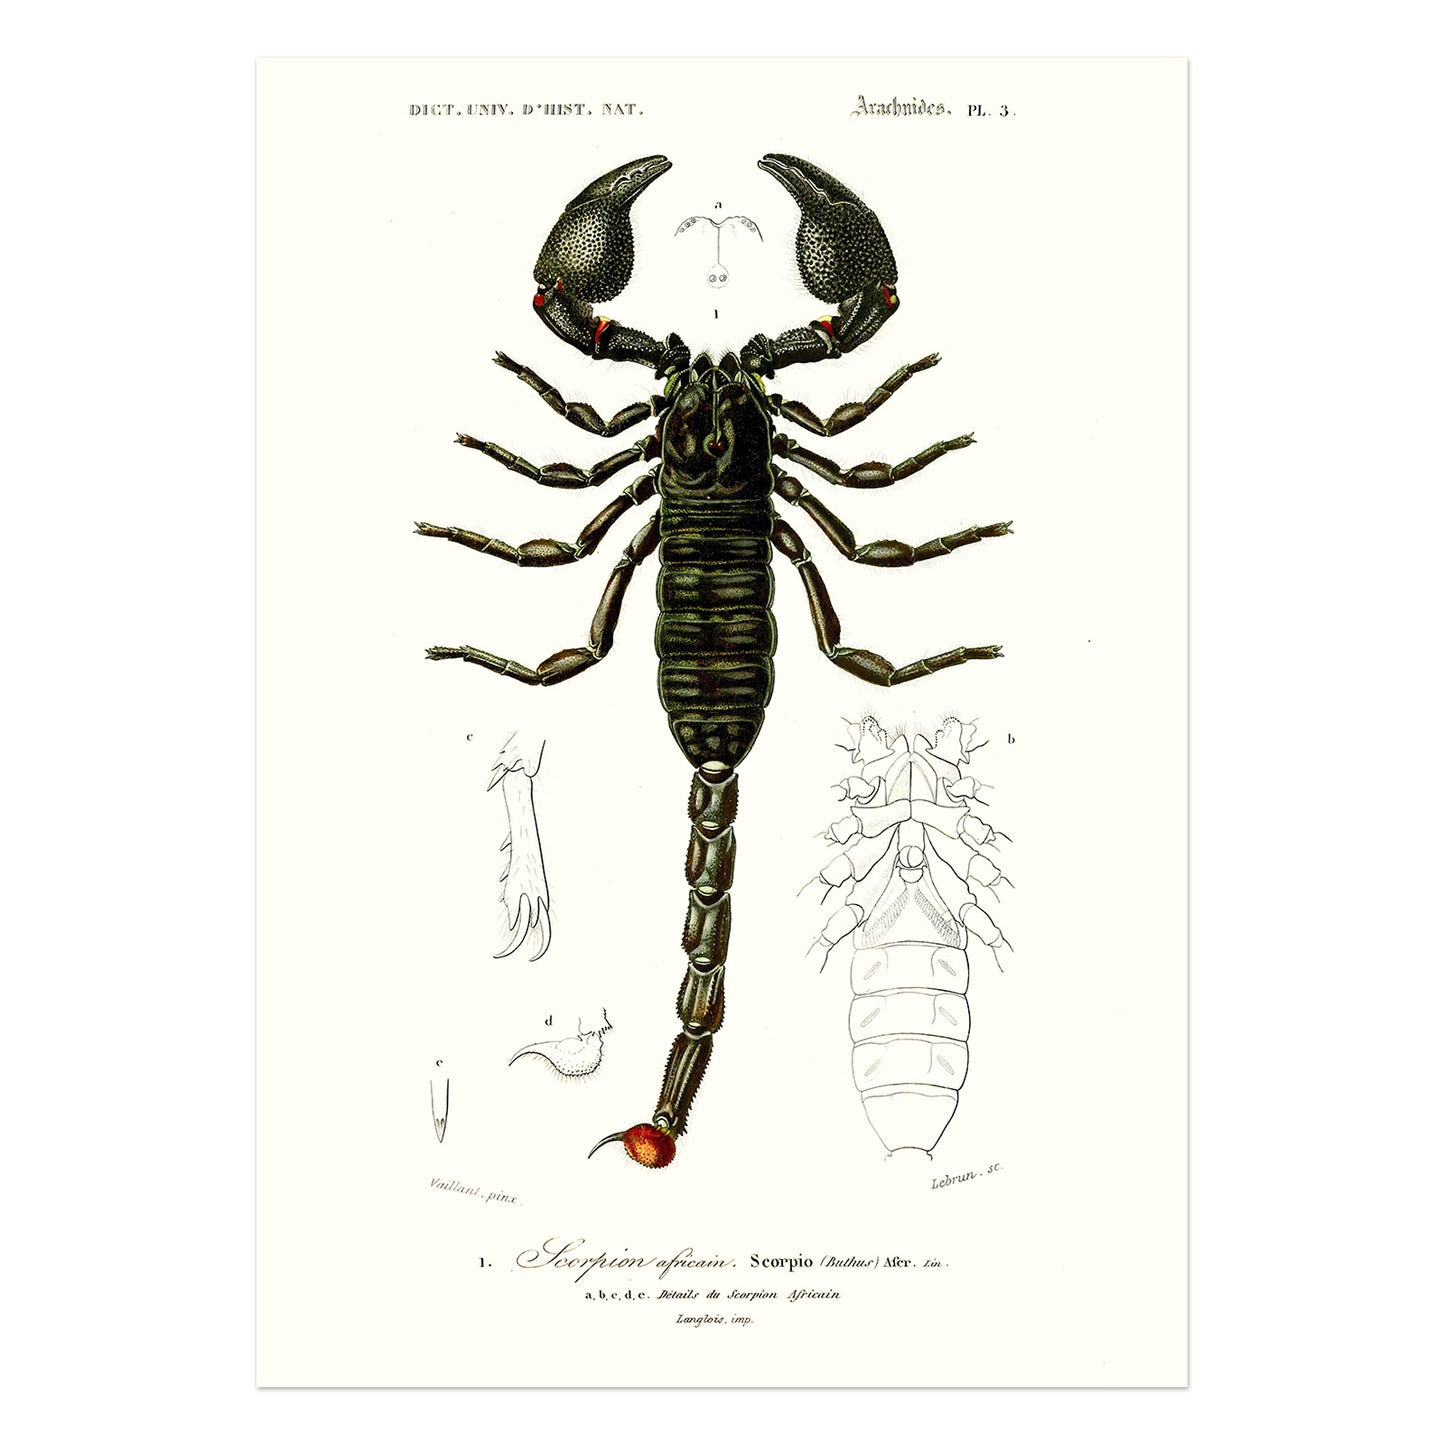 The emperor scorpion - Pandinus imperator